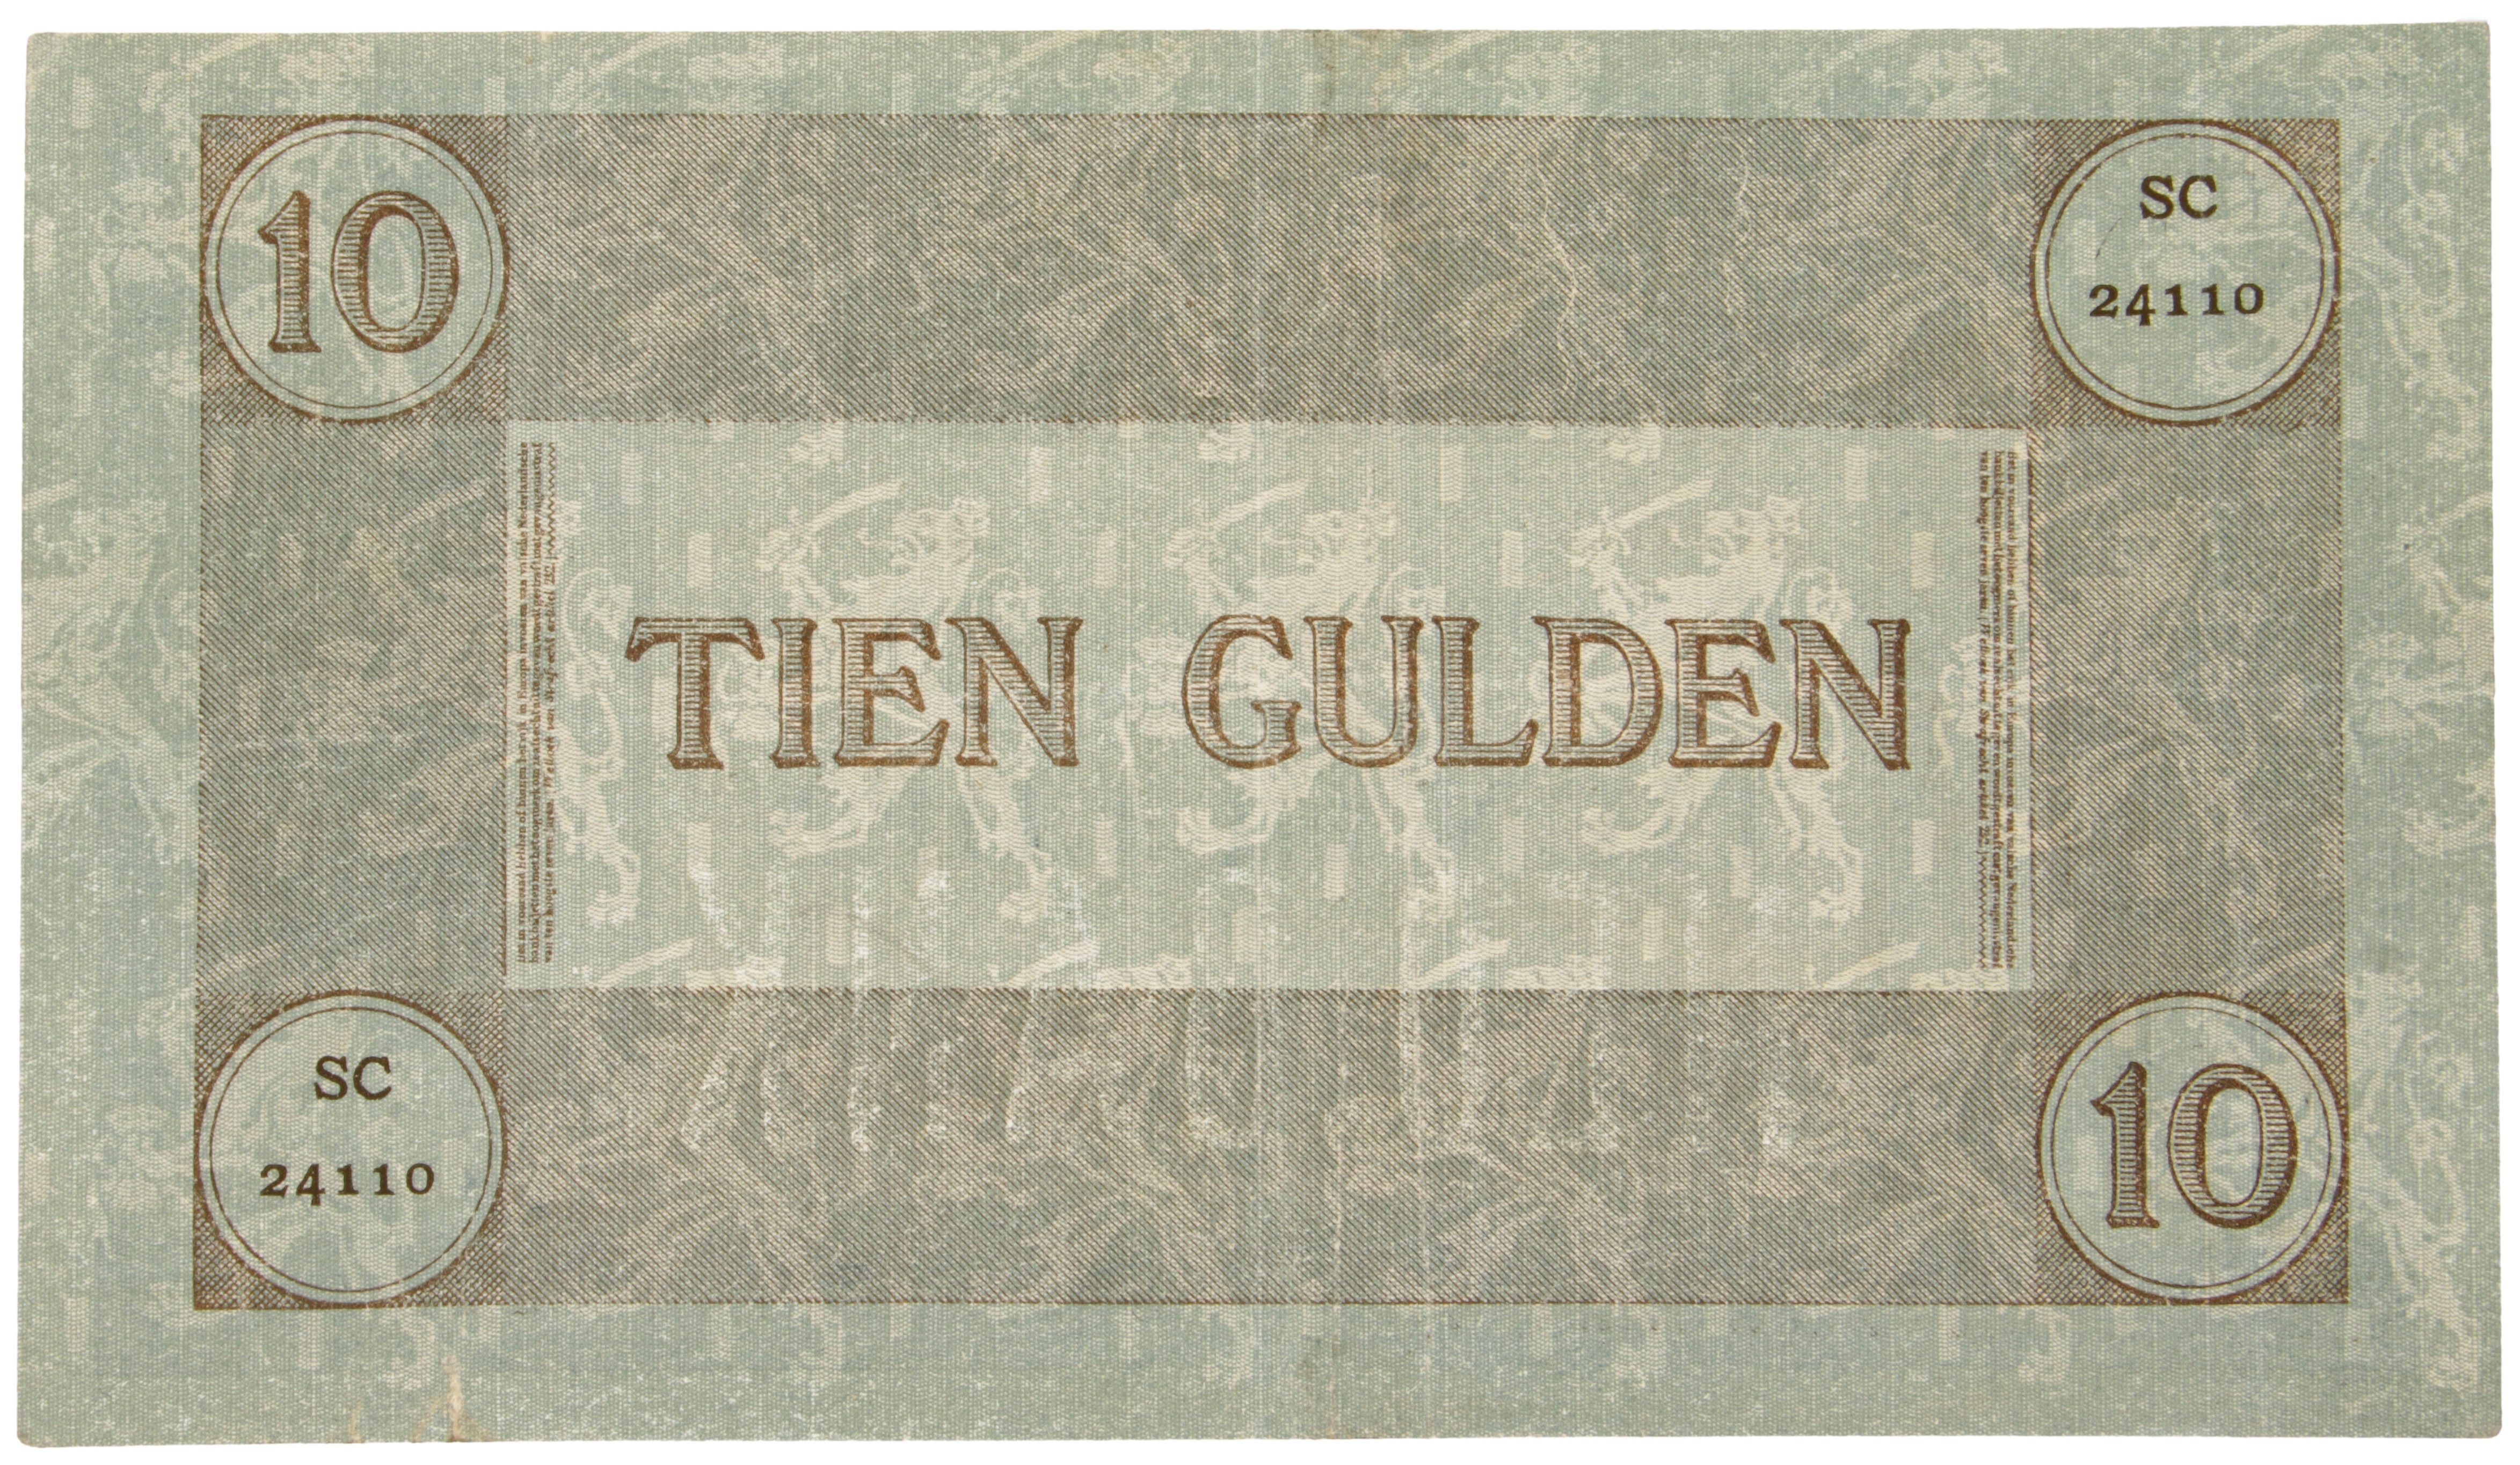 Nederland. 10 Gulden. Bankbiljet. Type 1904. Type Arbeid en Welvaart I. - Zeer Fraai +.